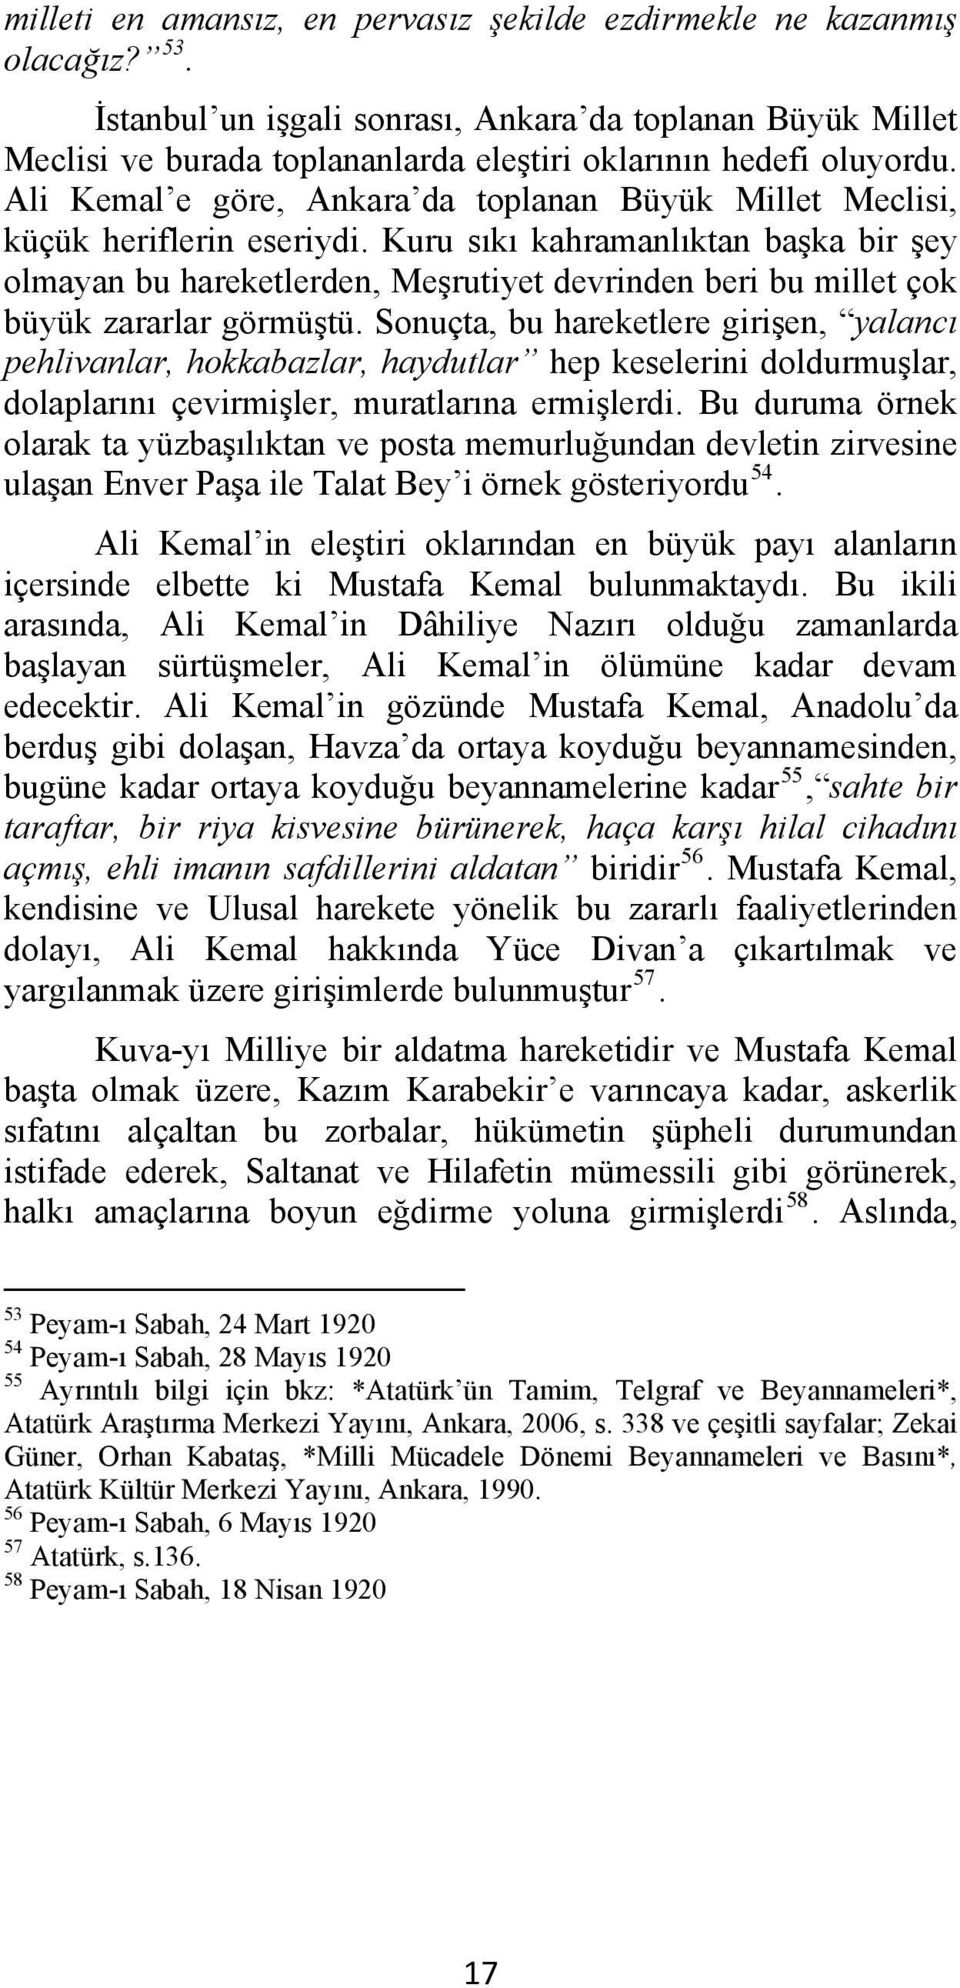 Ali Kemal e göre, Ankara da toplanan Büyük Millet Meclisi, küçük heriflerin eseriydi.